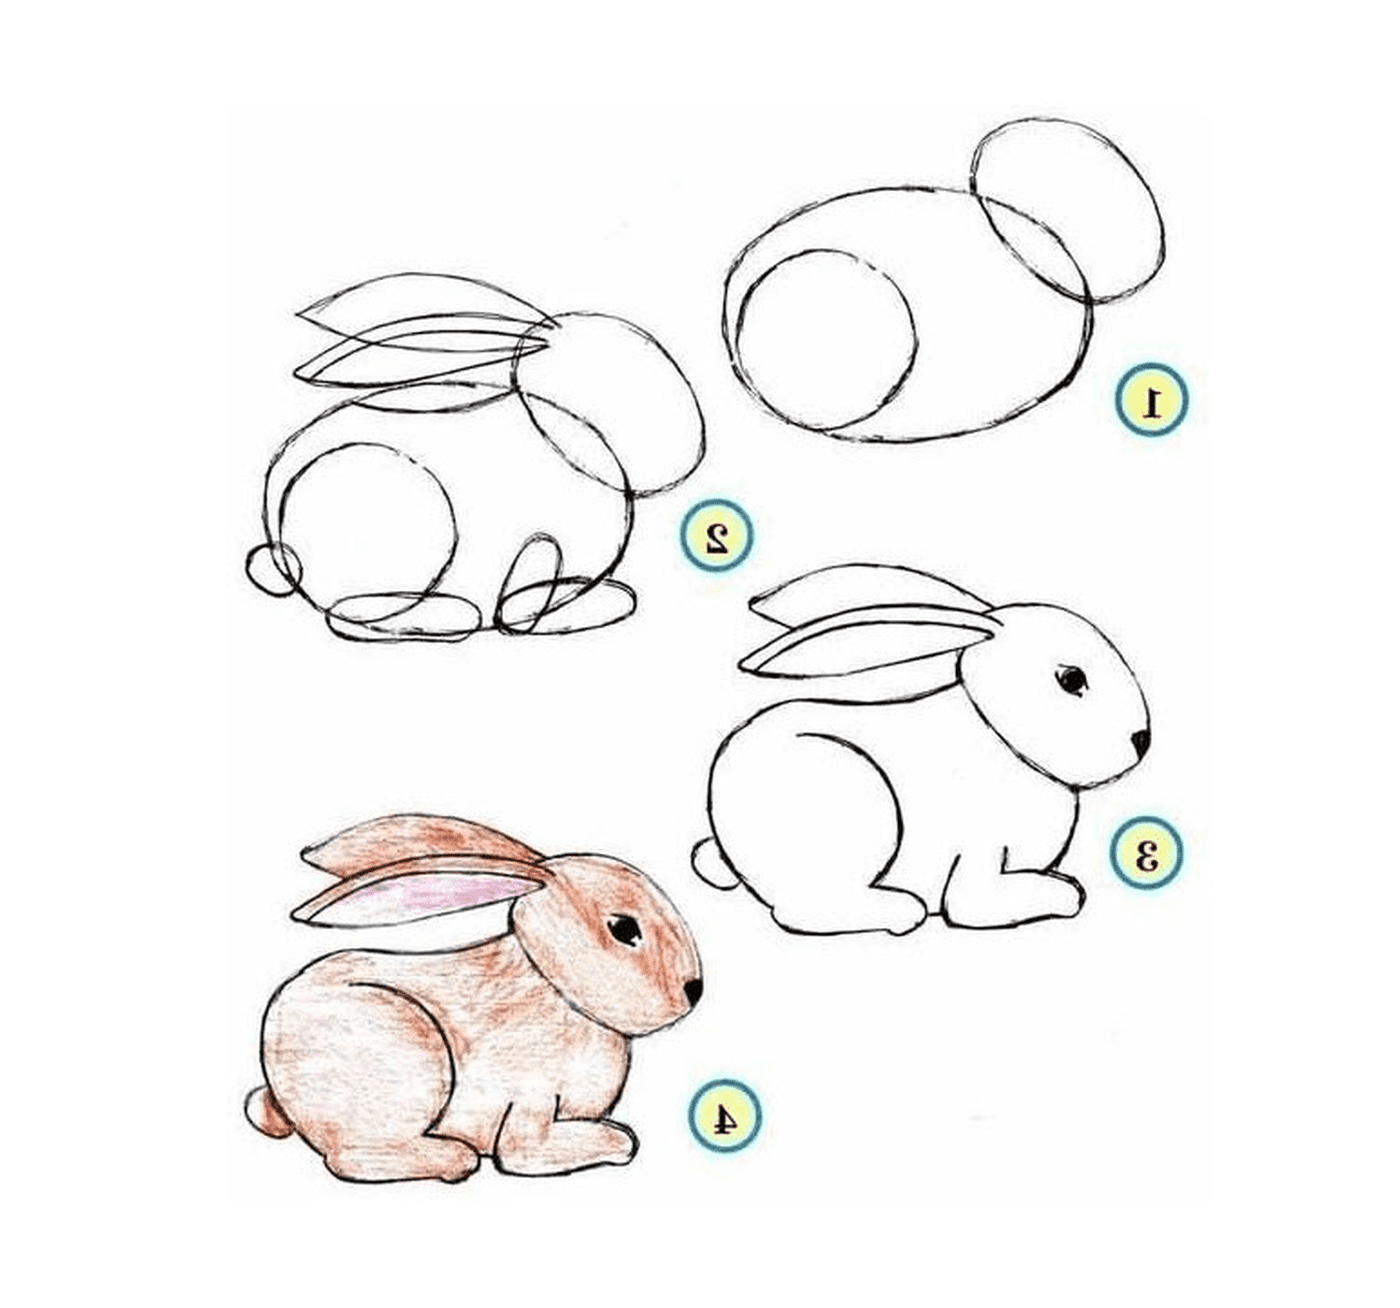  Cómo dibujar un conejo paso a paso 